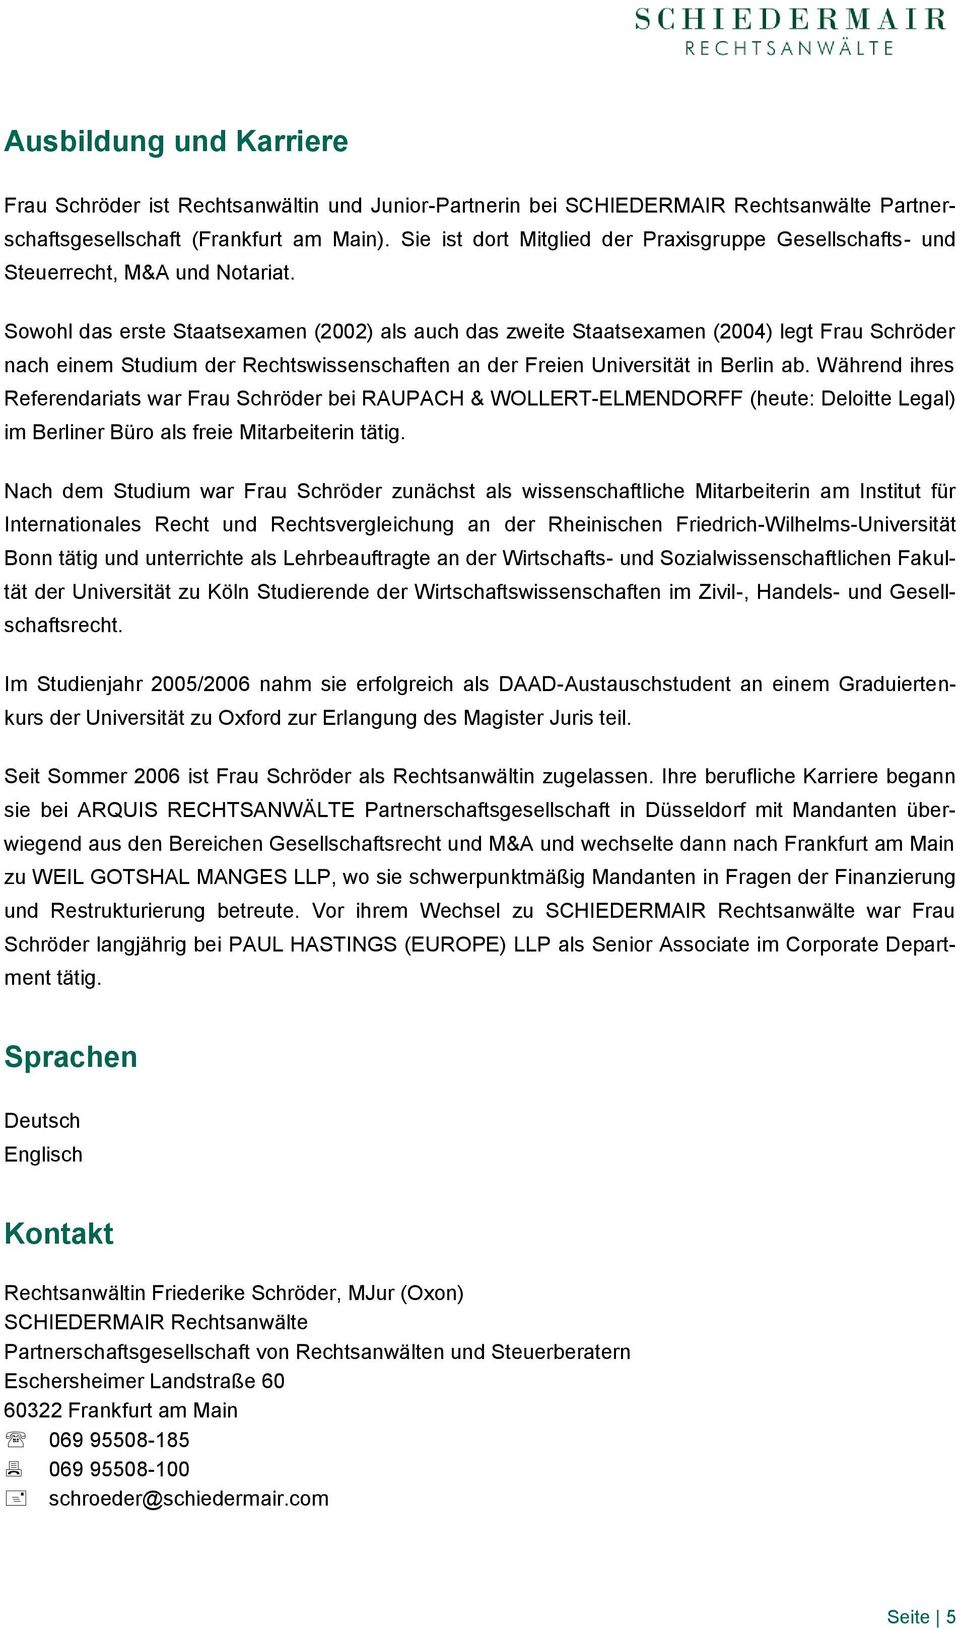 Sowohl das erste Staatsexamen (2002) als auch das zweite Staatsexamen (2004) legt Frau Schröder nach einem Studium der Rechtswissenschaften an der Freien Universität in Berlin ab.